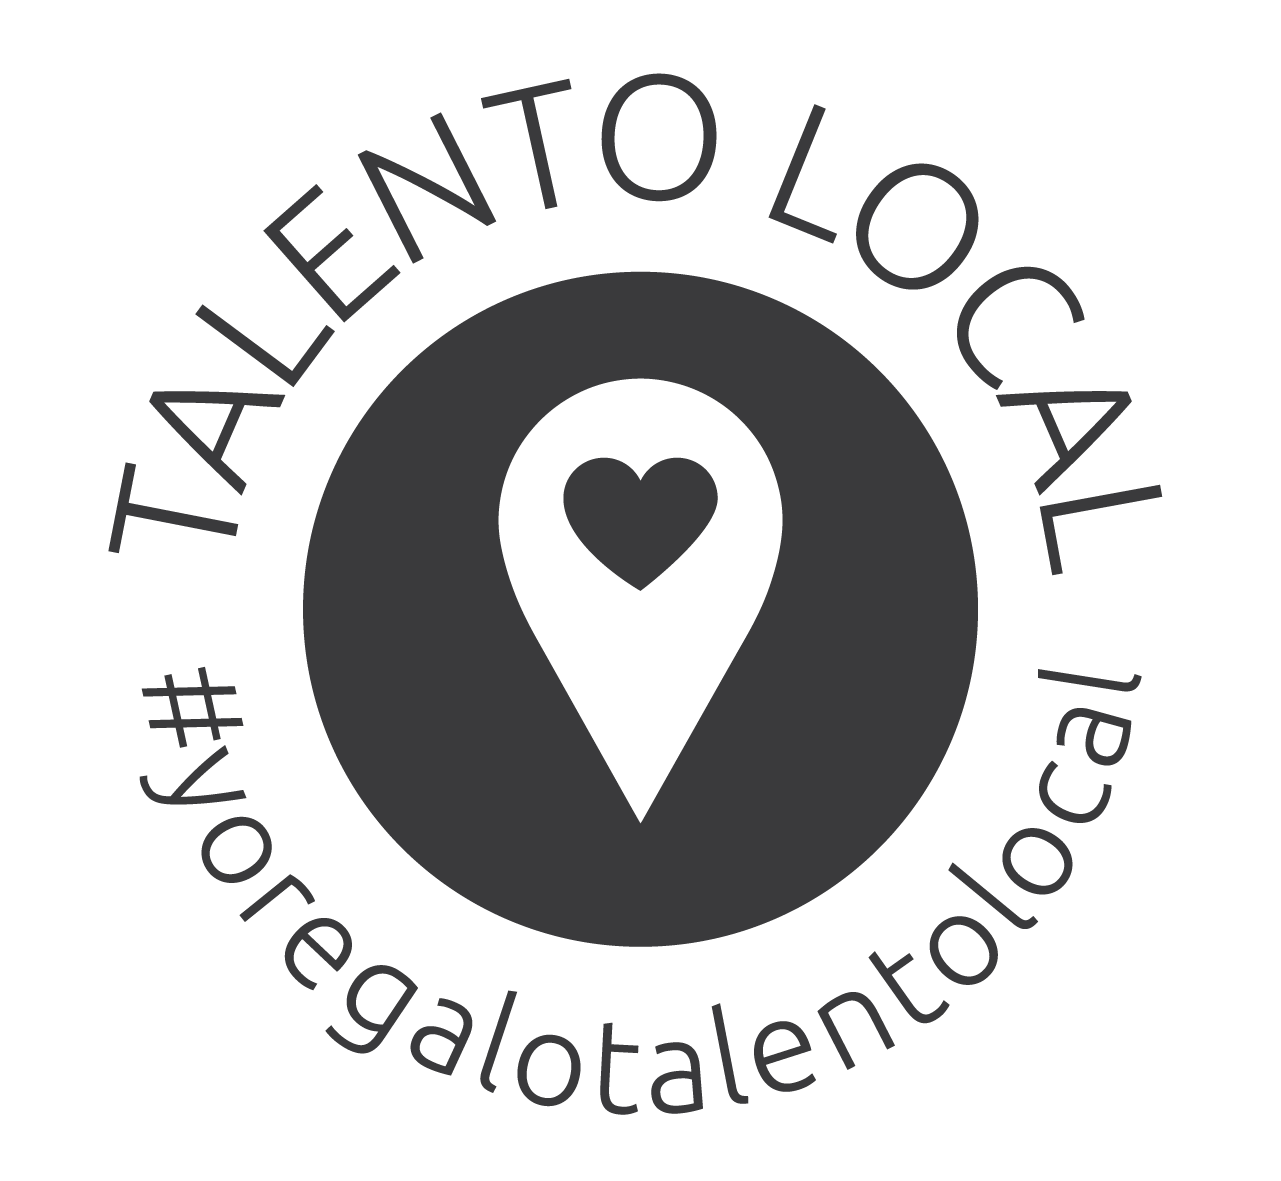 talento local